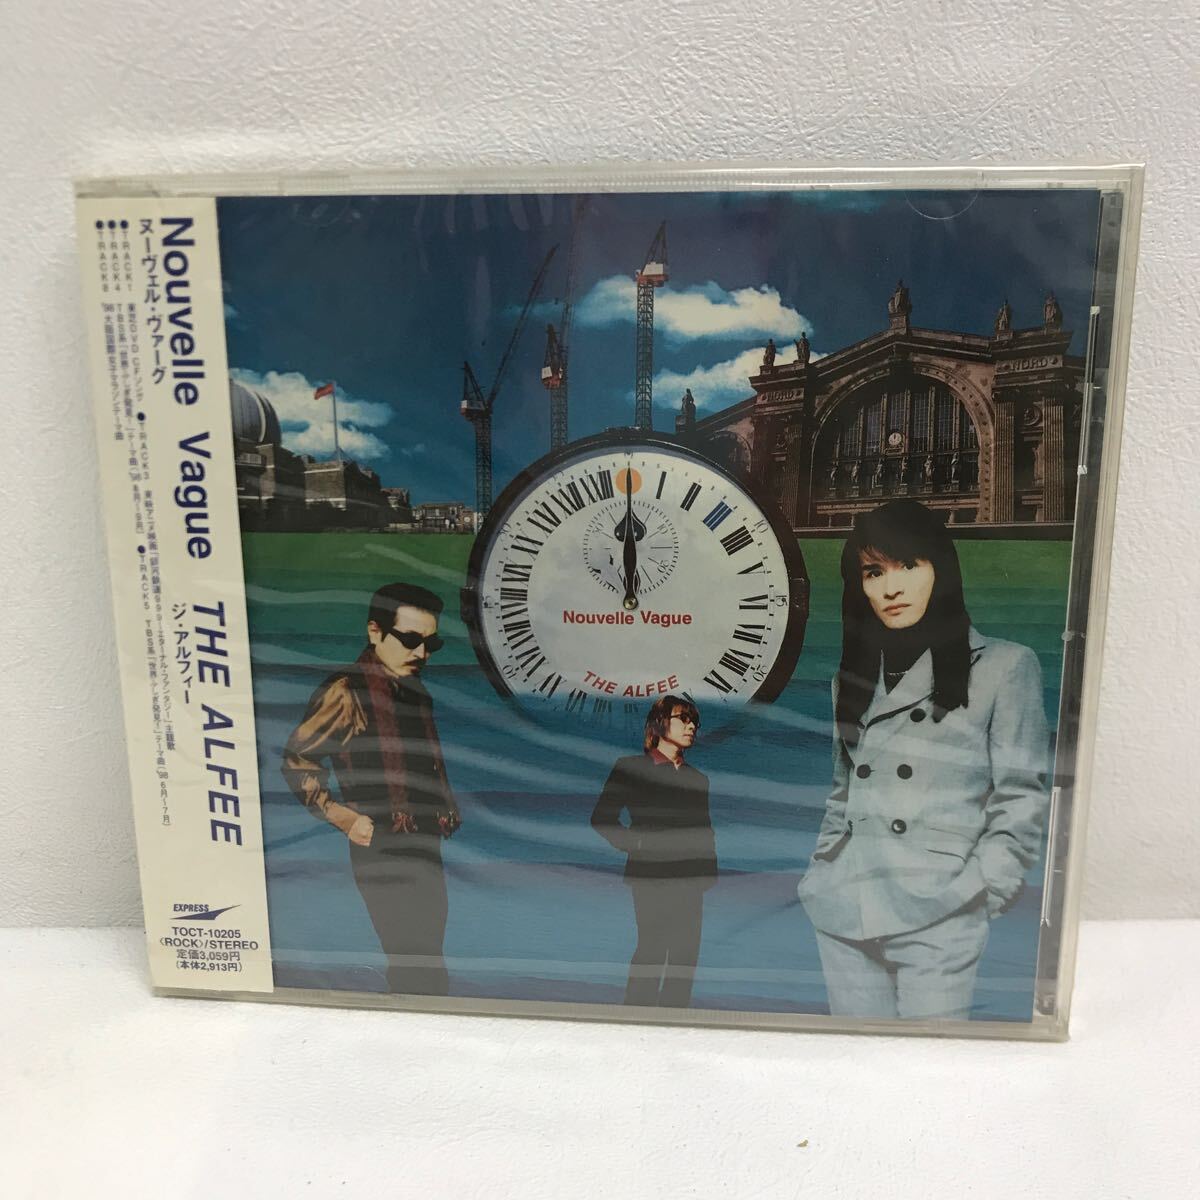 I0507A3 нераспечатанный *THE ALFEE Nouvelle Vaguen-veru*va-gCD музыка Японская музыка с поясом оби Toshiba EMI / Crisis Game / Pride / CRASH! др. 